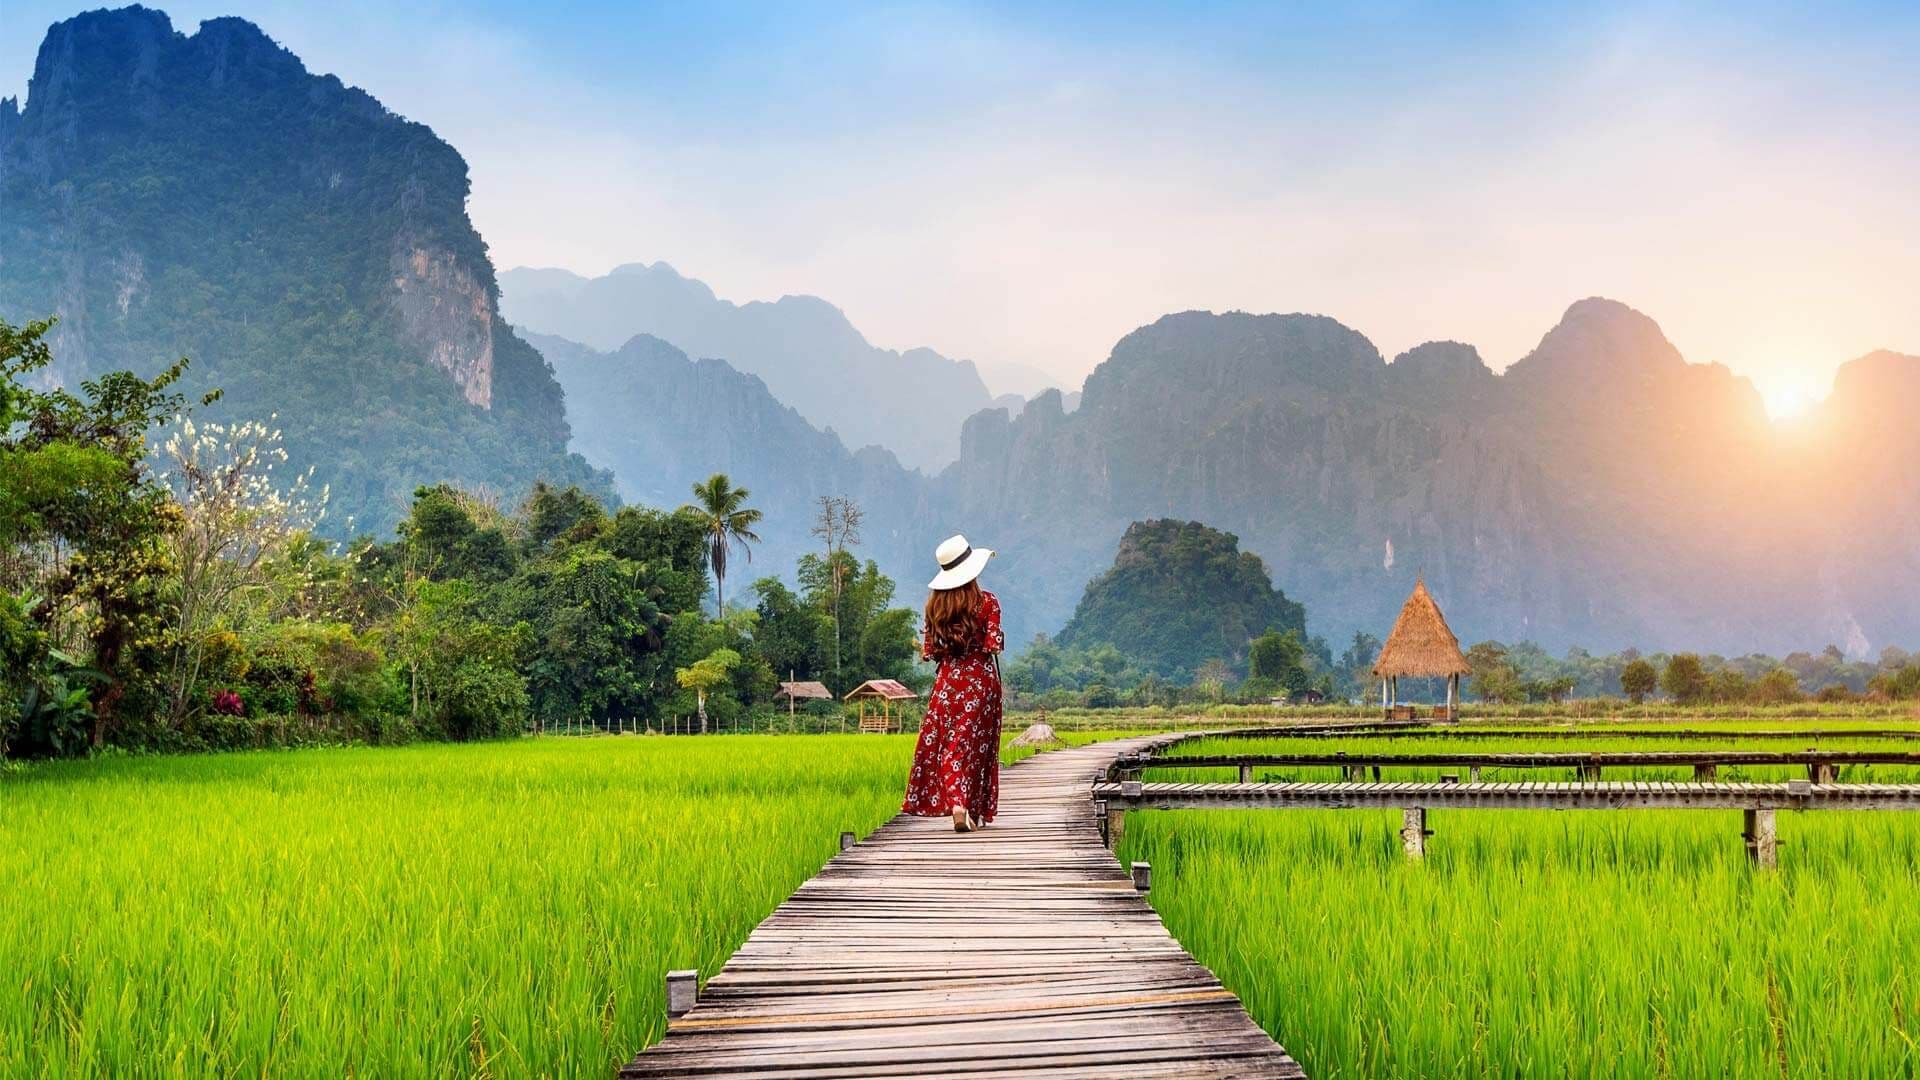 Let's explore Laos